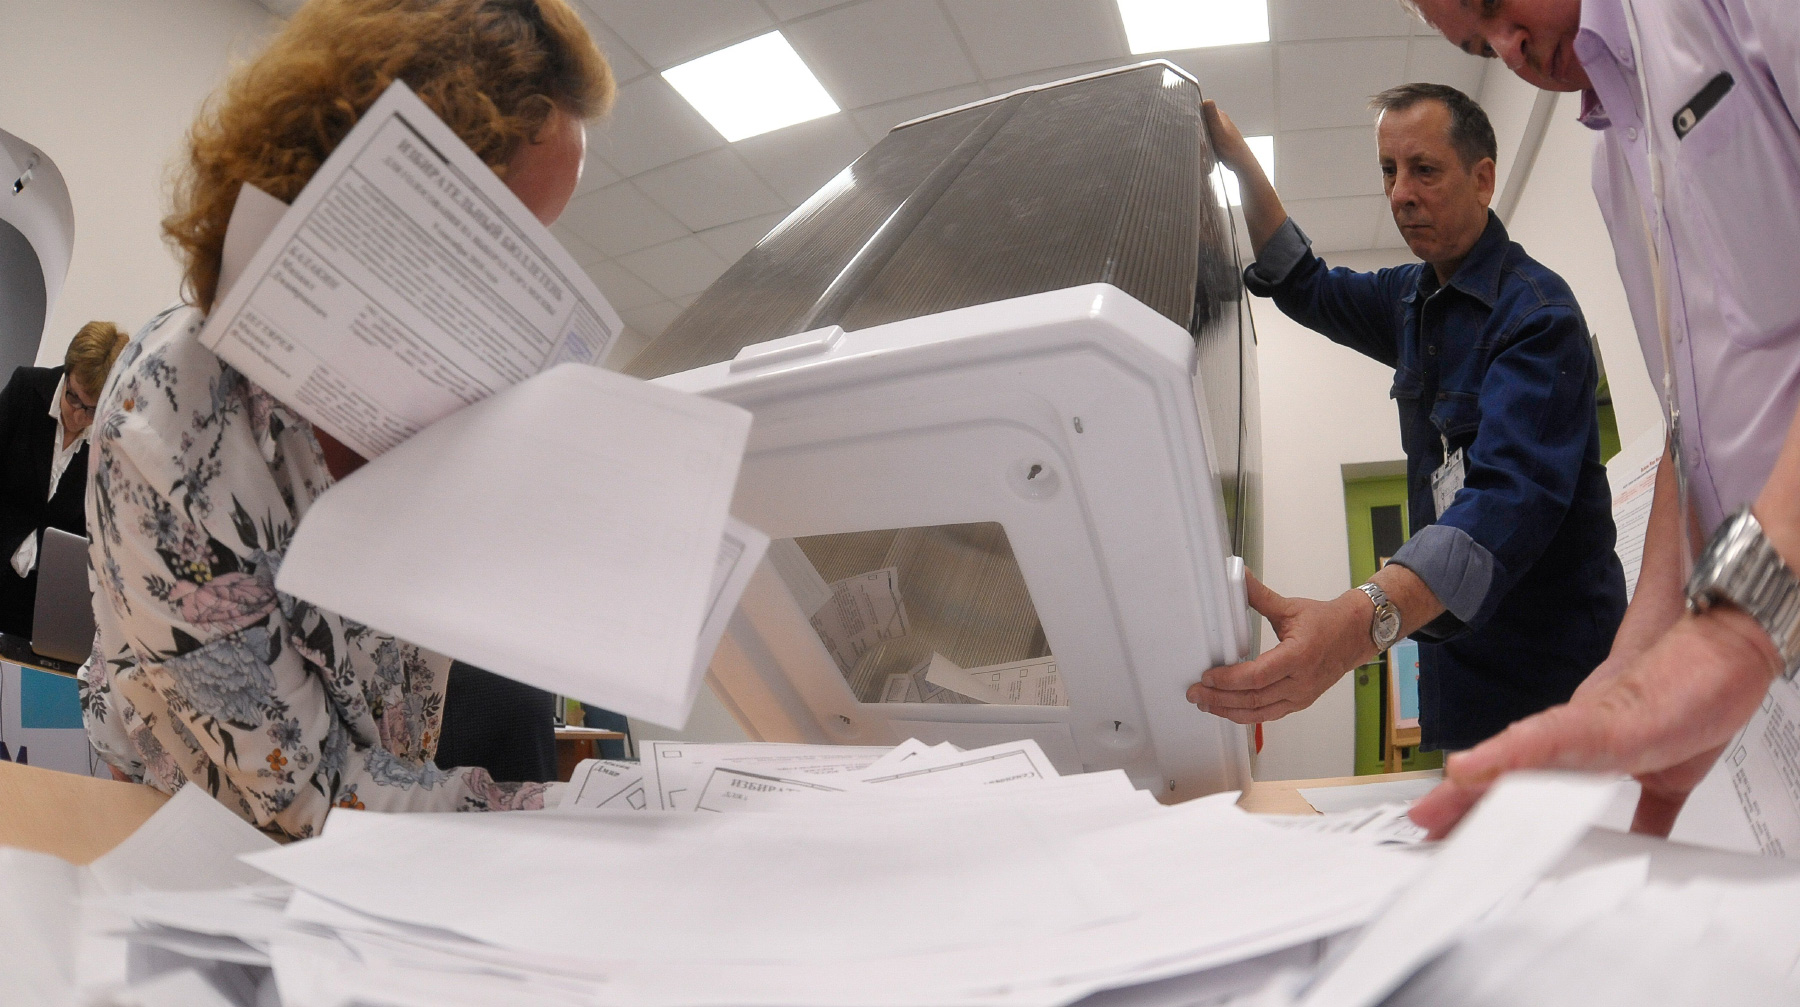 «Ящик для голосования» ассоциируется с похоронами, считает глава ЦИК Элла Памфилова Фото: © Агенство Москва / Никеричев Андрей